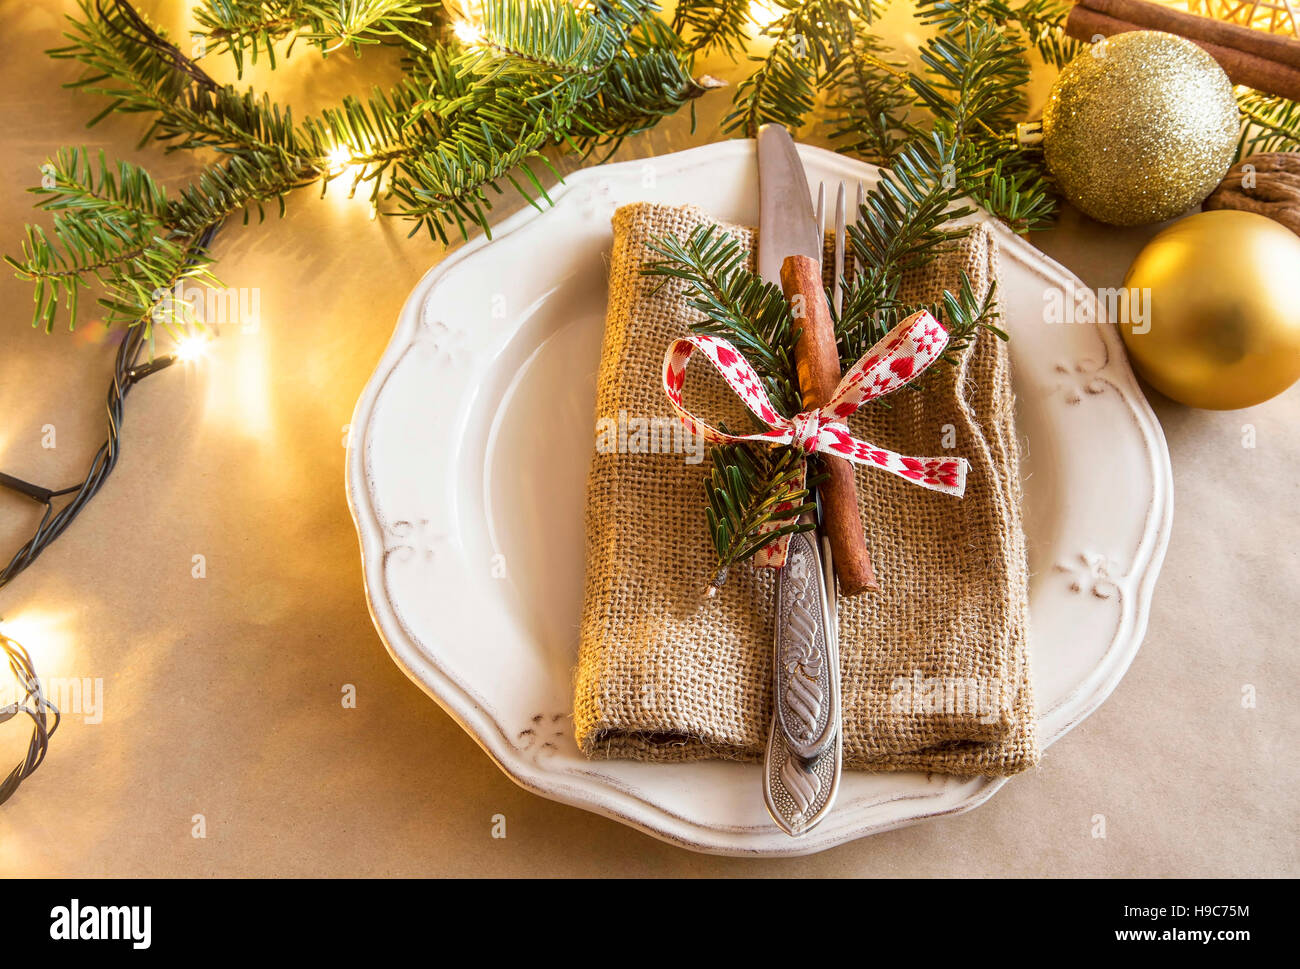 Cadre rustique, Noël, fête table à manger avec une fourchette et couteau décoré de branches de sapins et le bâton de cannelle Banque D'Images